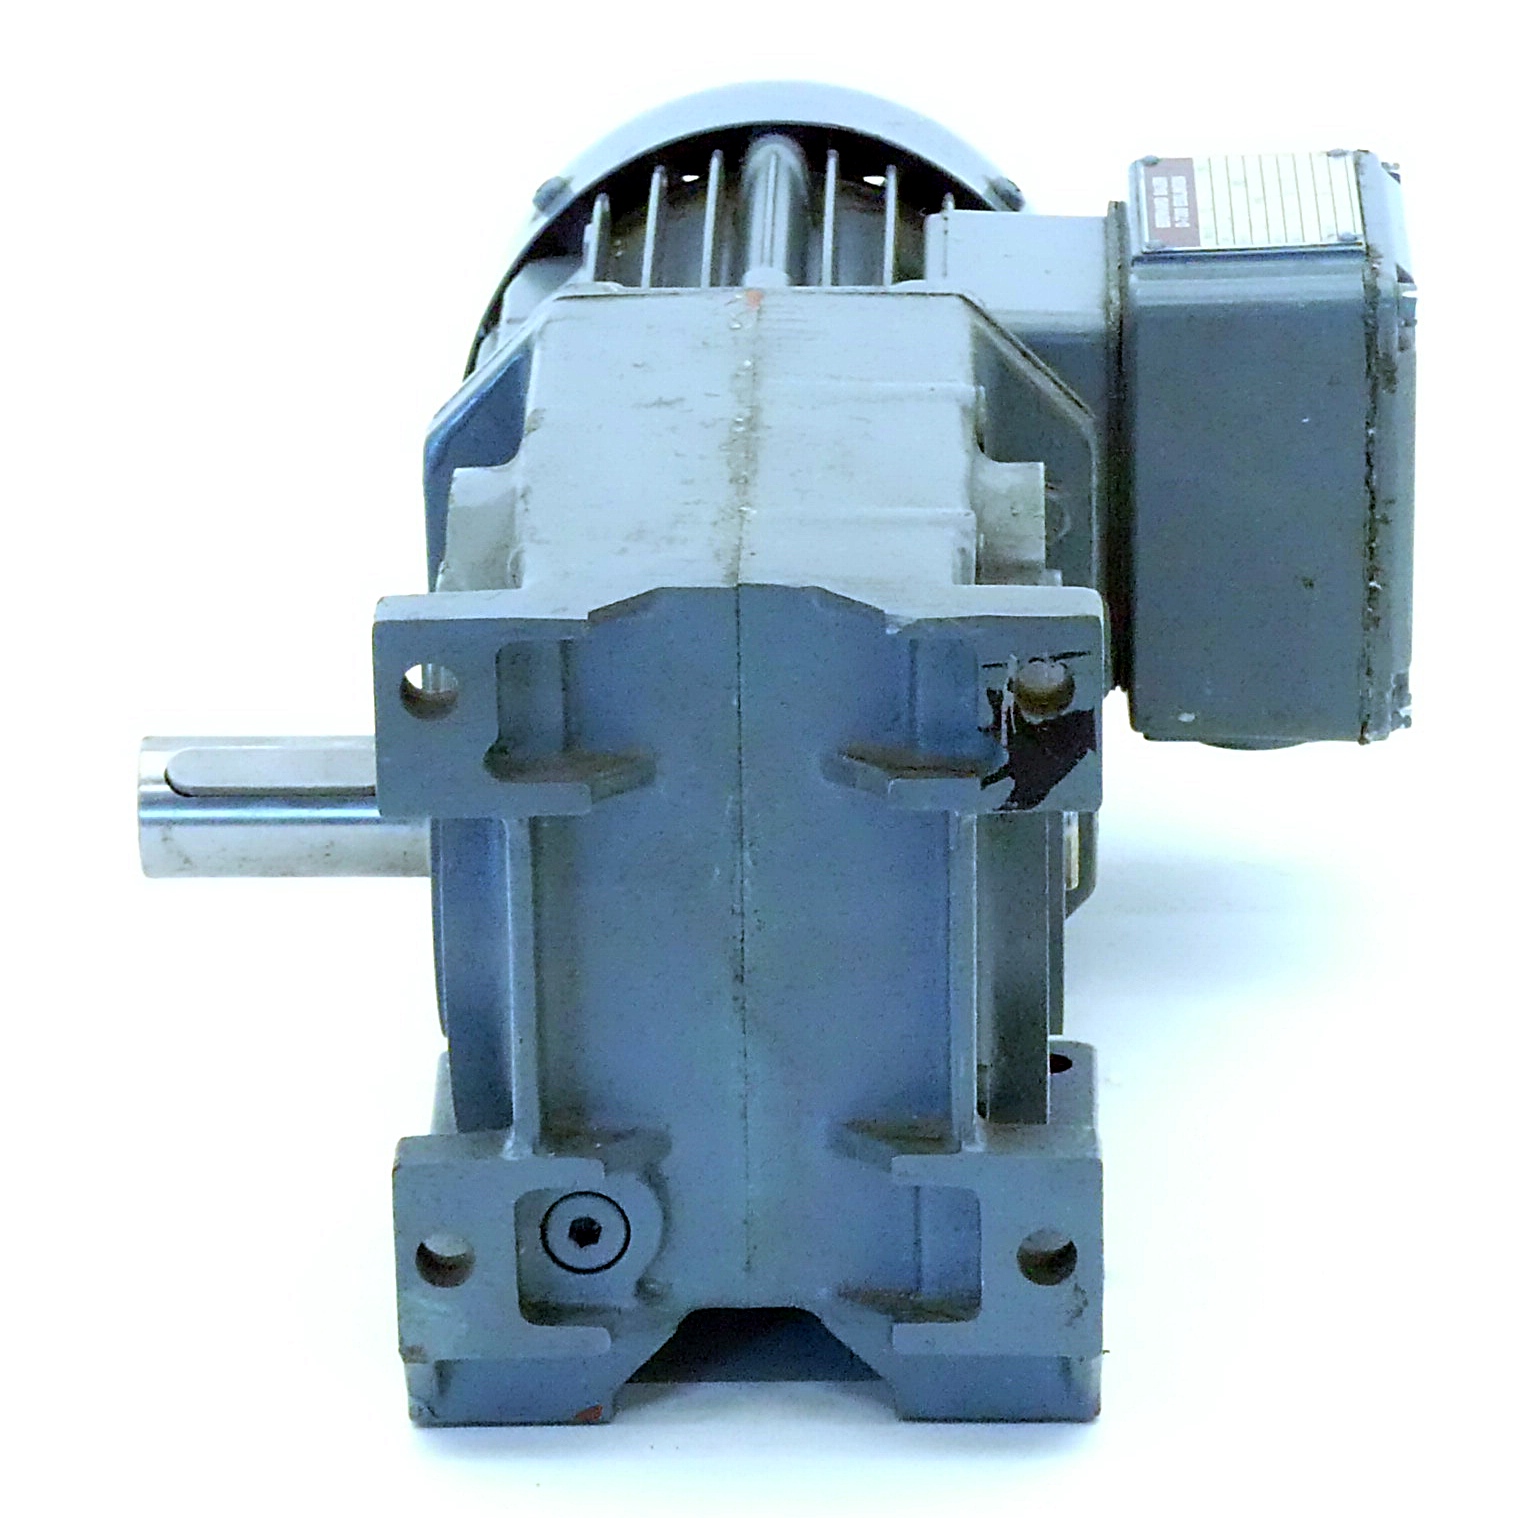 Getriebemotor SG2-22/DK 64-163 L 